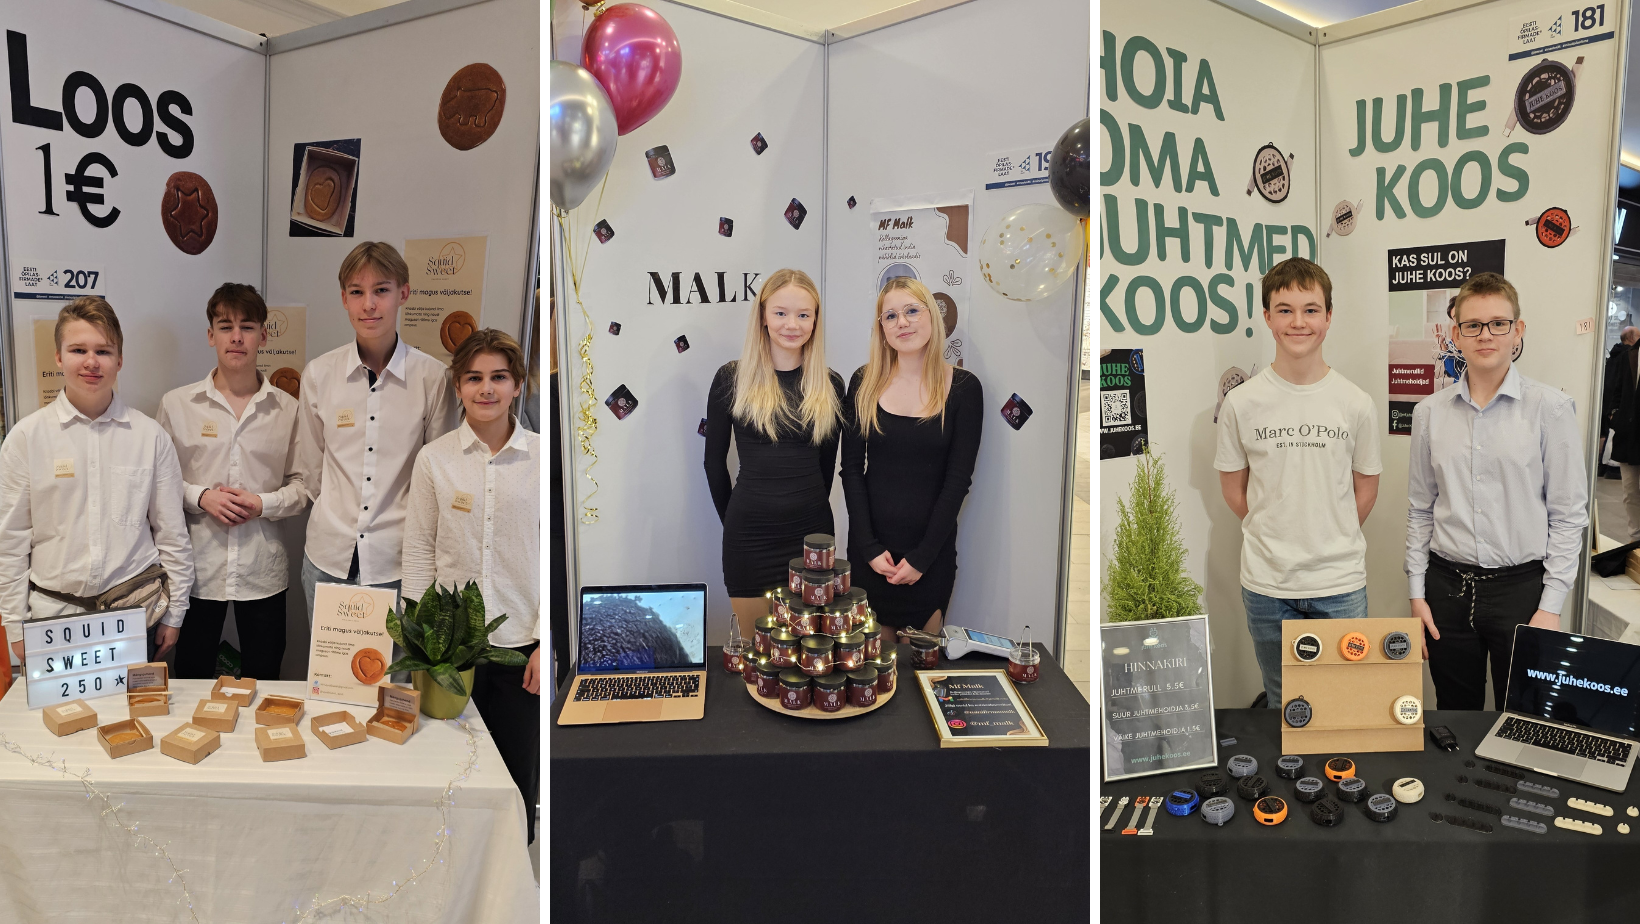 Meie tublid minifirmad MALK, Juhe Koos ja Squid Sweet pääsesid “Eesti parim minifirma 2024” võistlusele, mis toimub 18. aprillil Tallinnas SEB innovatsioonikesk